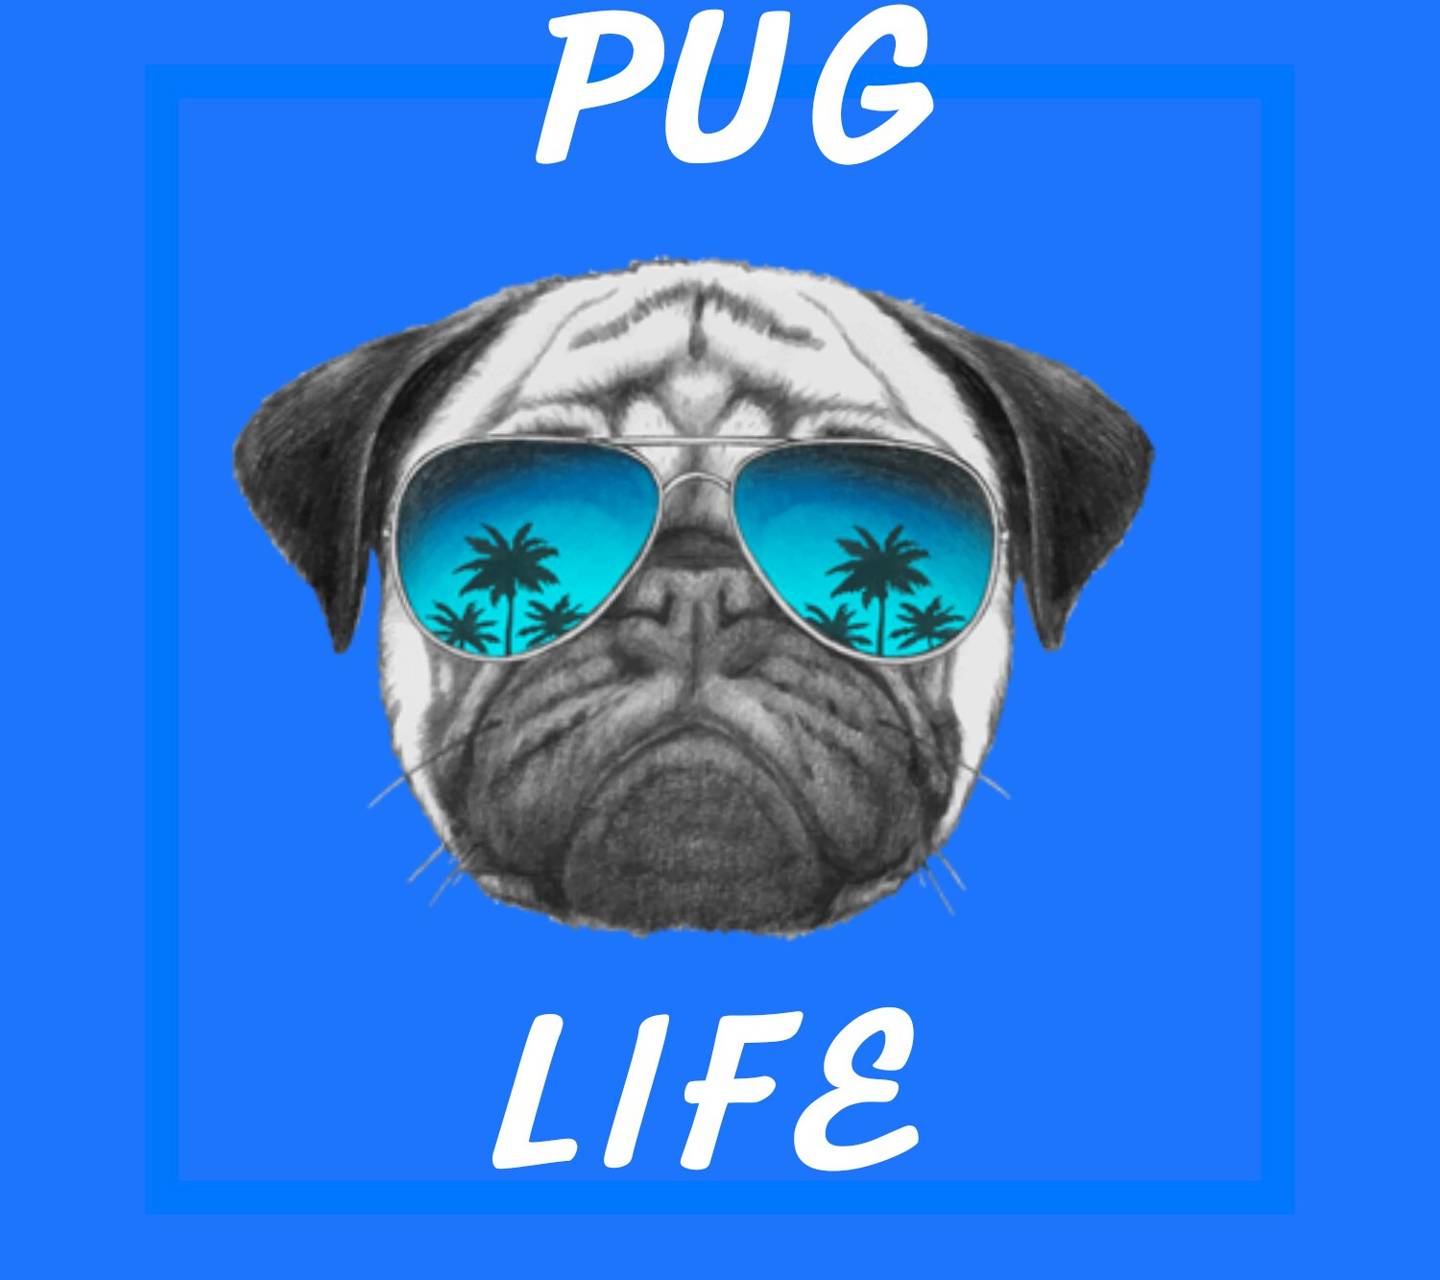 Pug life wallpaper